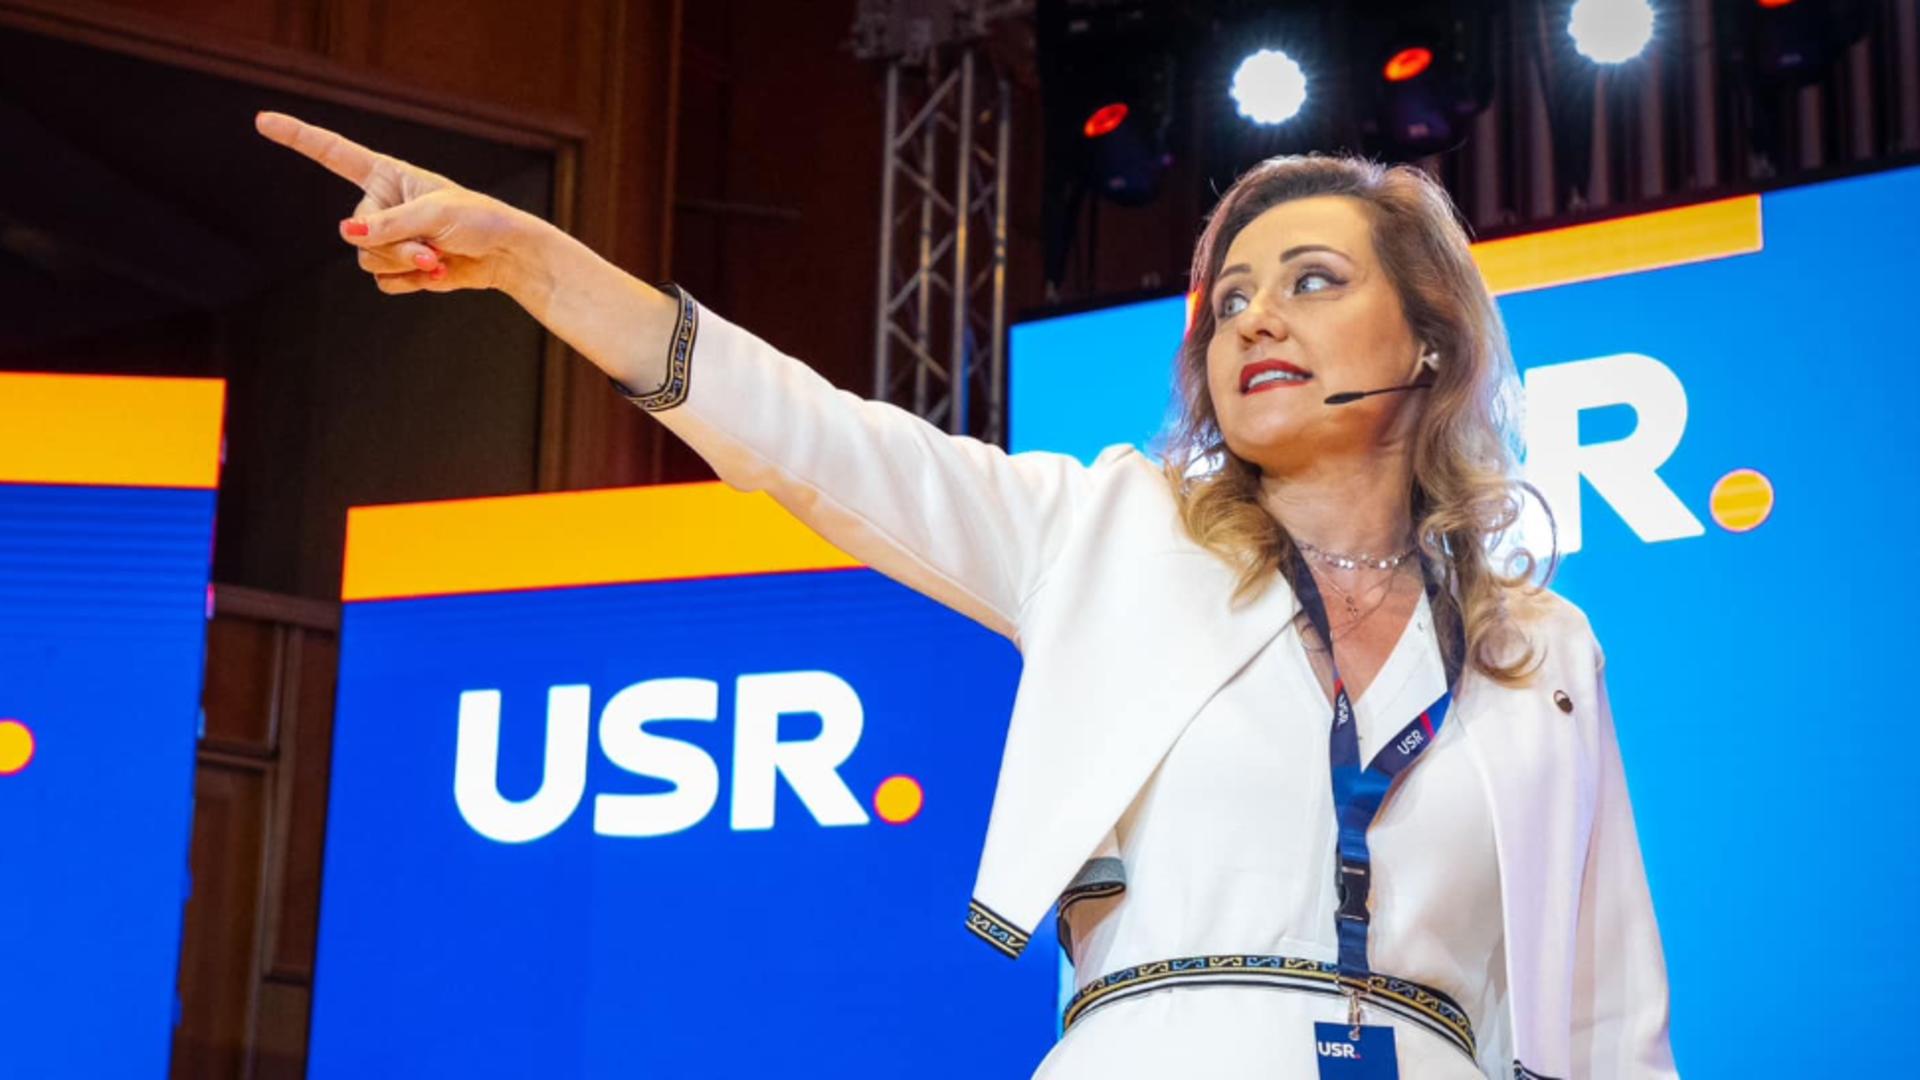 USR își retrage sprijinul pentru Elena Lasconi, după scandalul votului la referendumul pentru familie. Declarația lui Cătălin Drulă